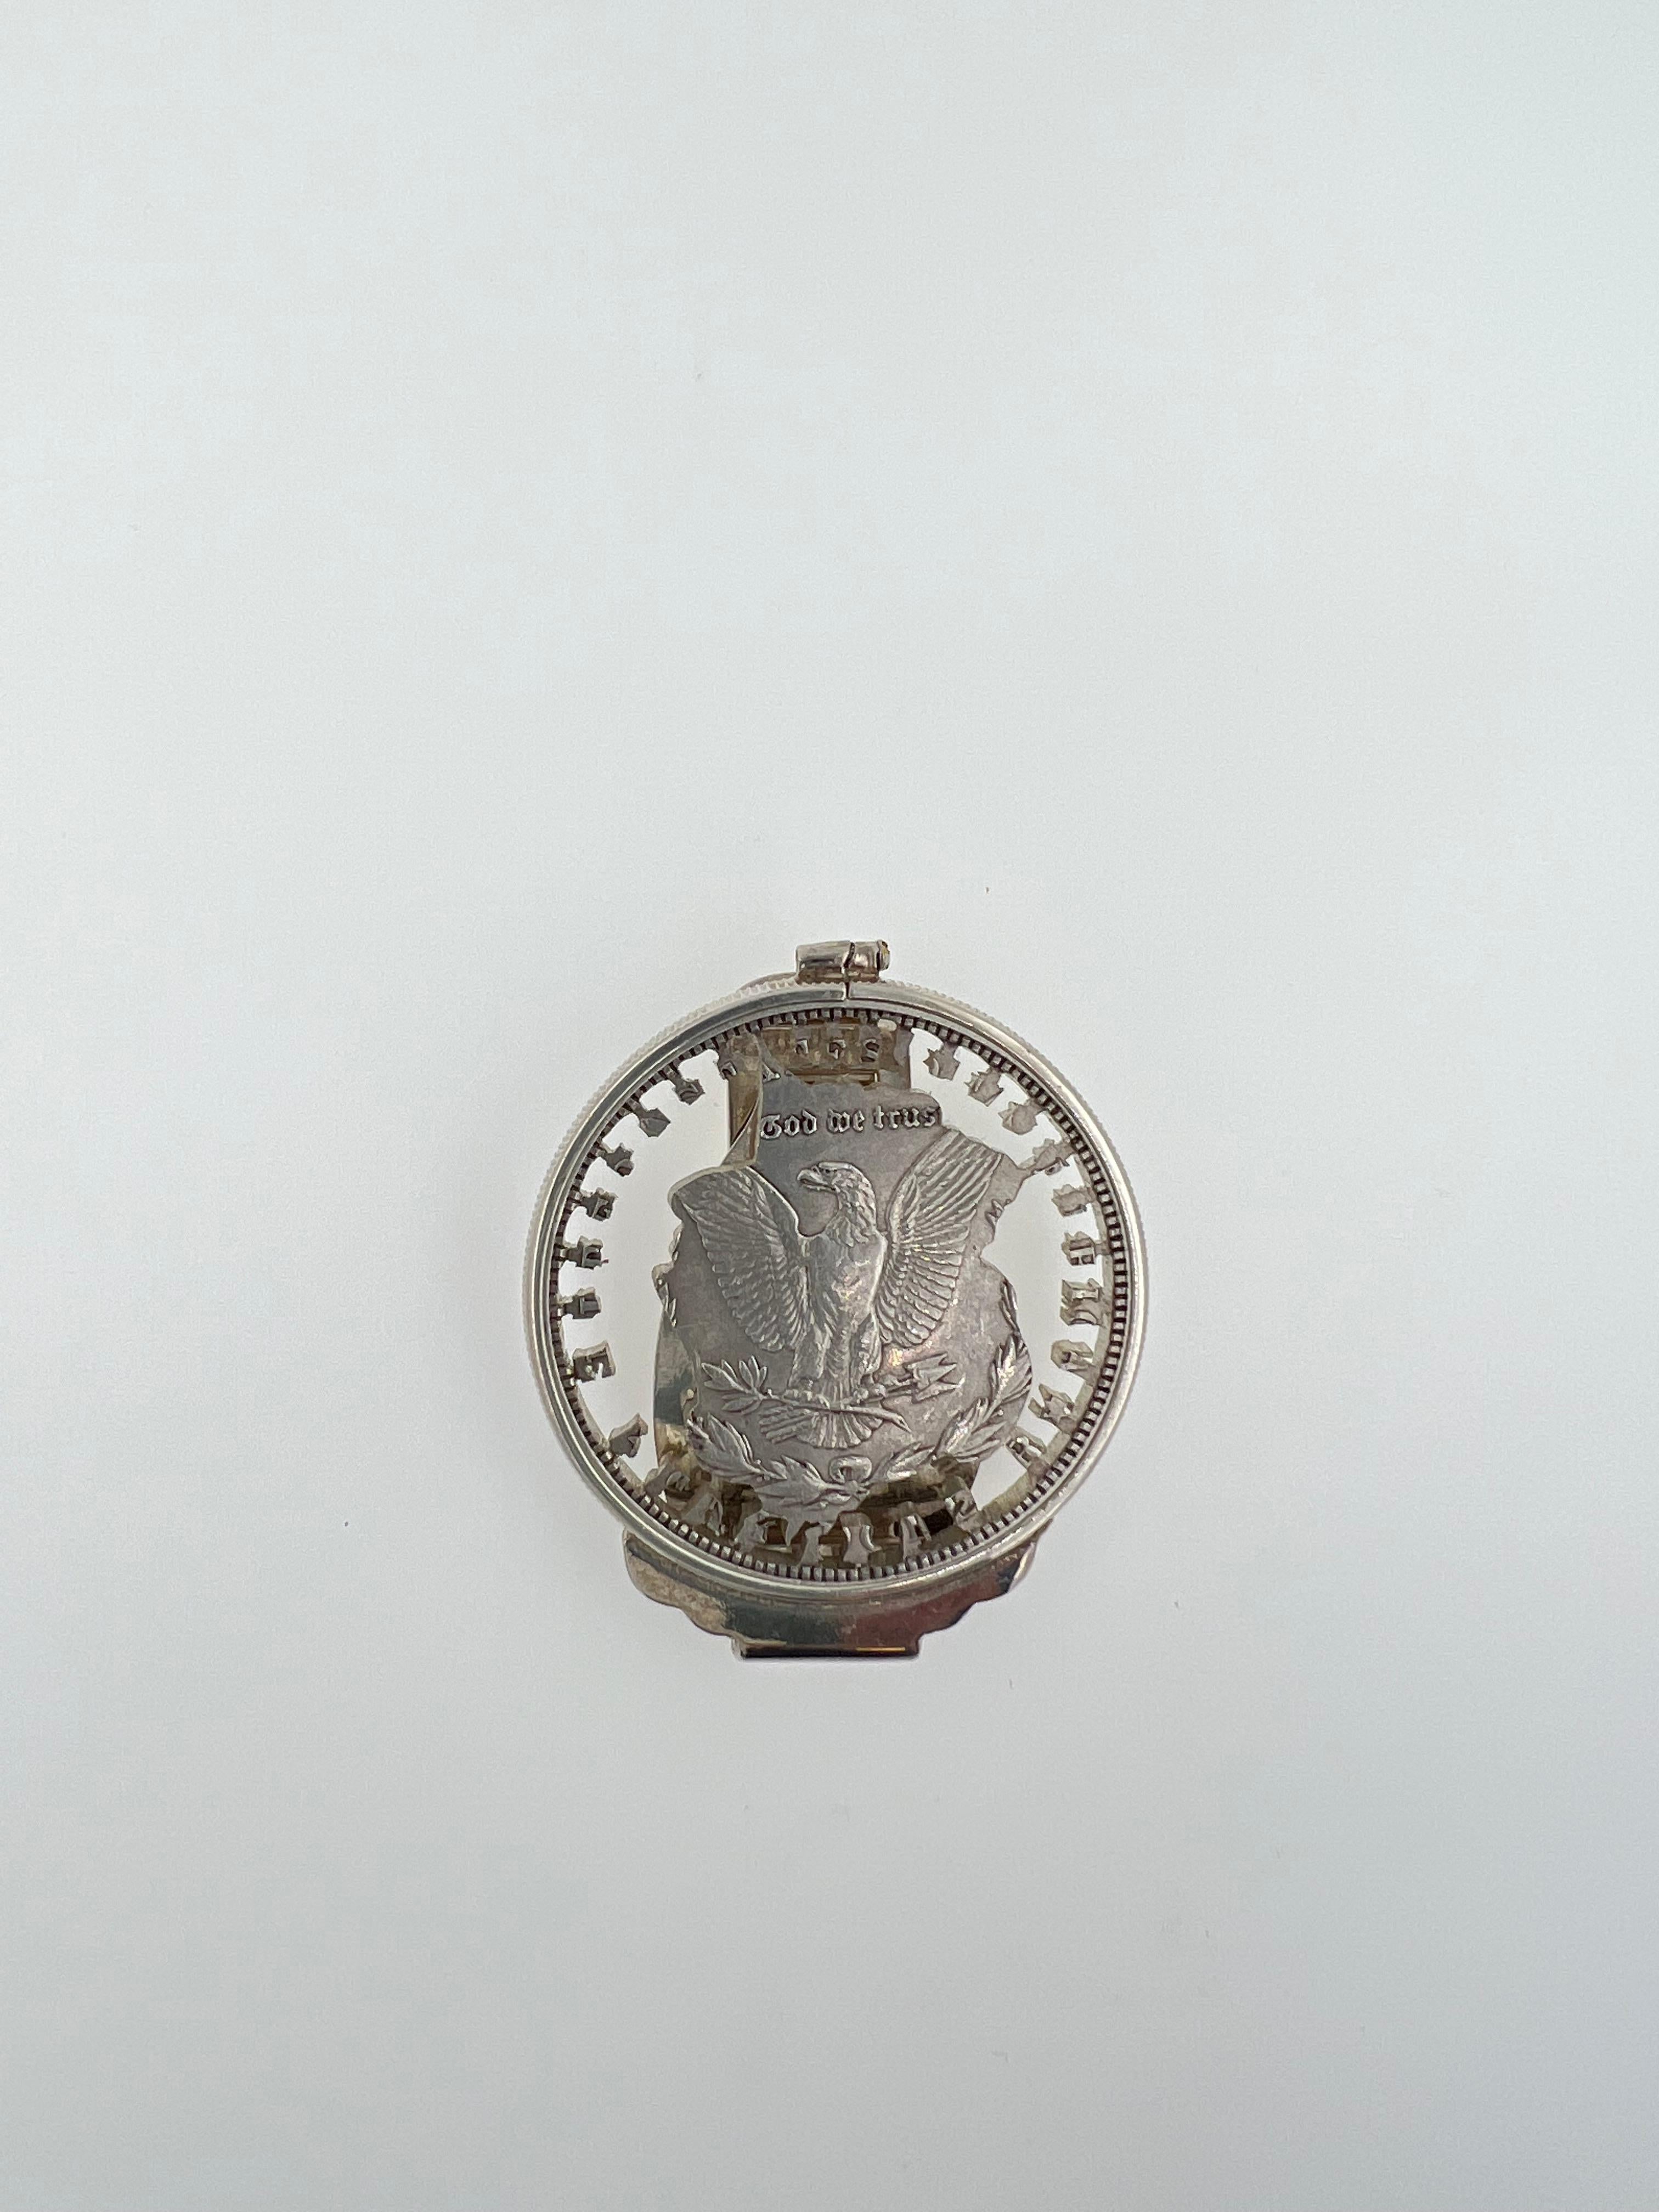 925 Massiv Sterling Silber + Weißes Rhodium
Echte Vintage By-Münze 
Adler aus Münze geschnitzt
Großer Wert